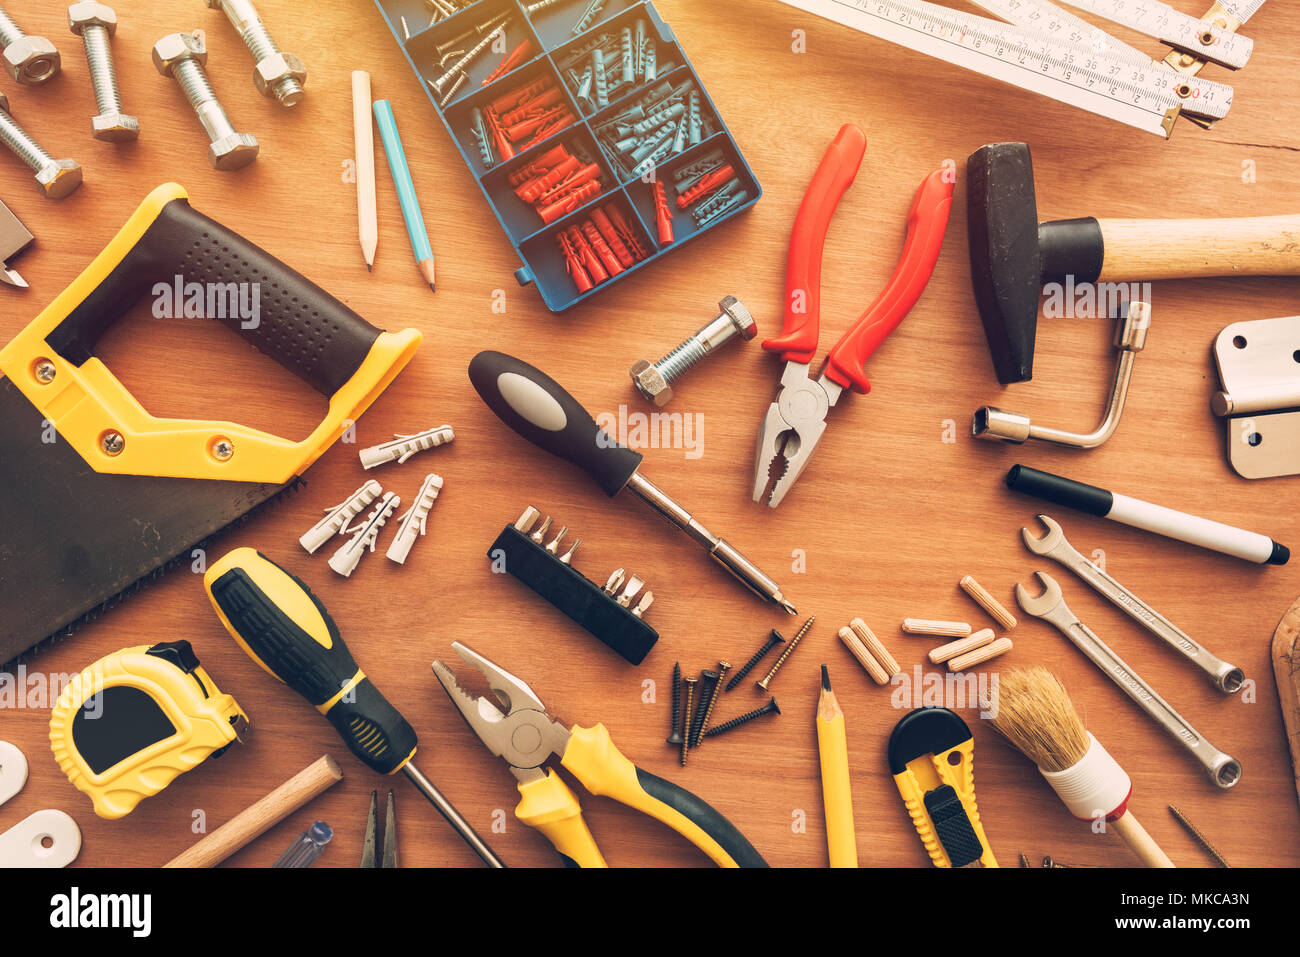 Casa assortiti renovationand riparare strumenti di progetto workshop sulla scrivania, vista dall'alto Foto Stock